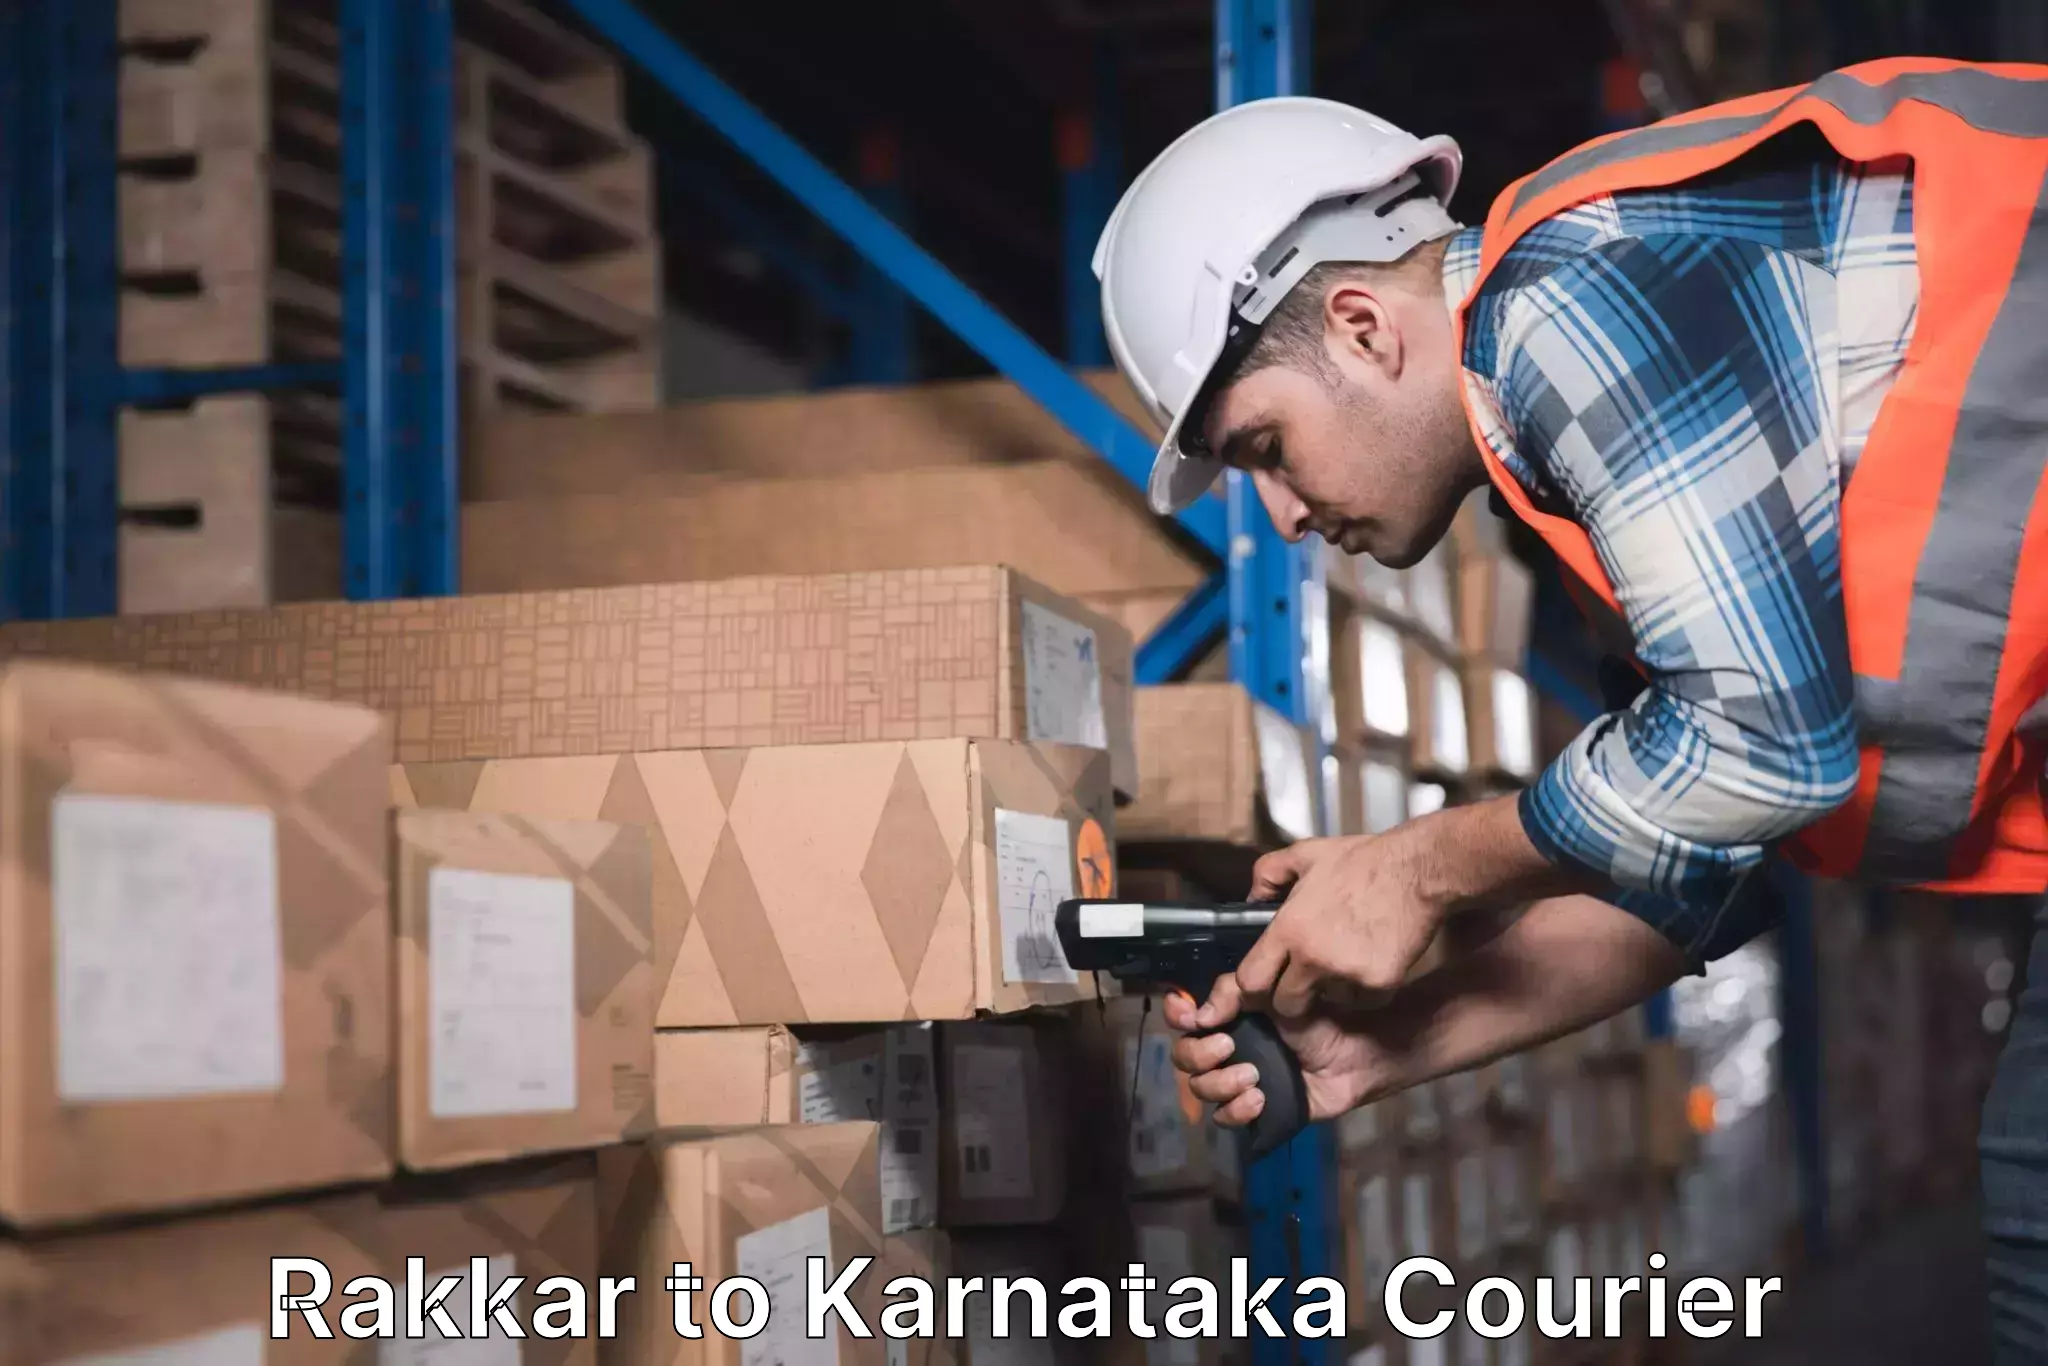 Modern courier technology Rakkar to Karnataka